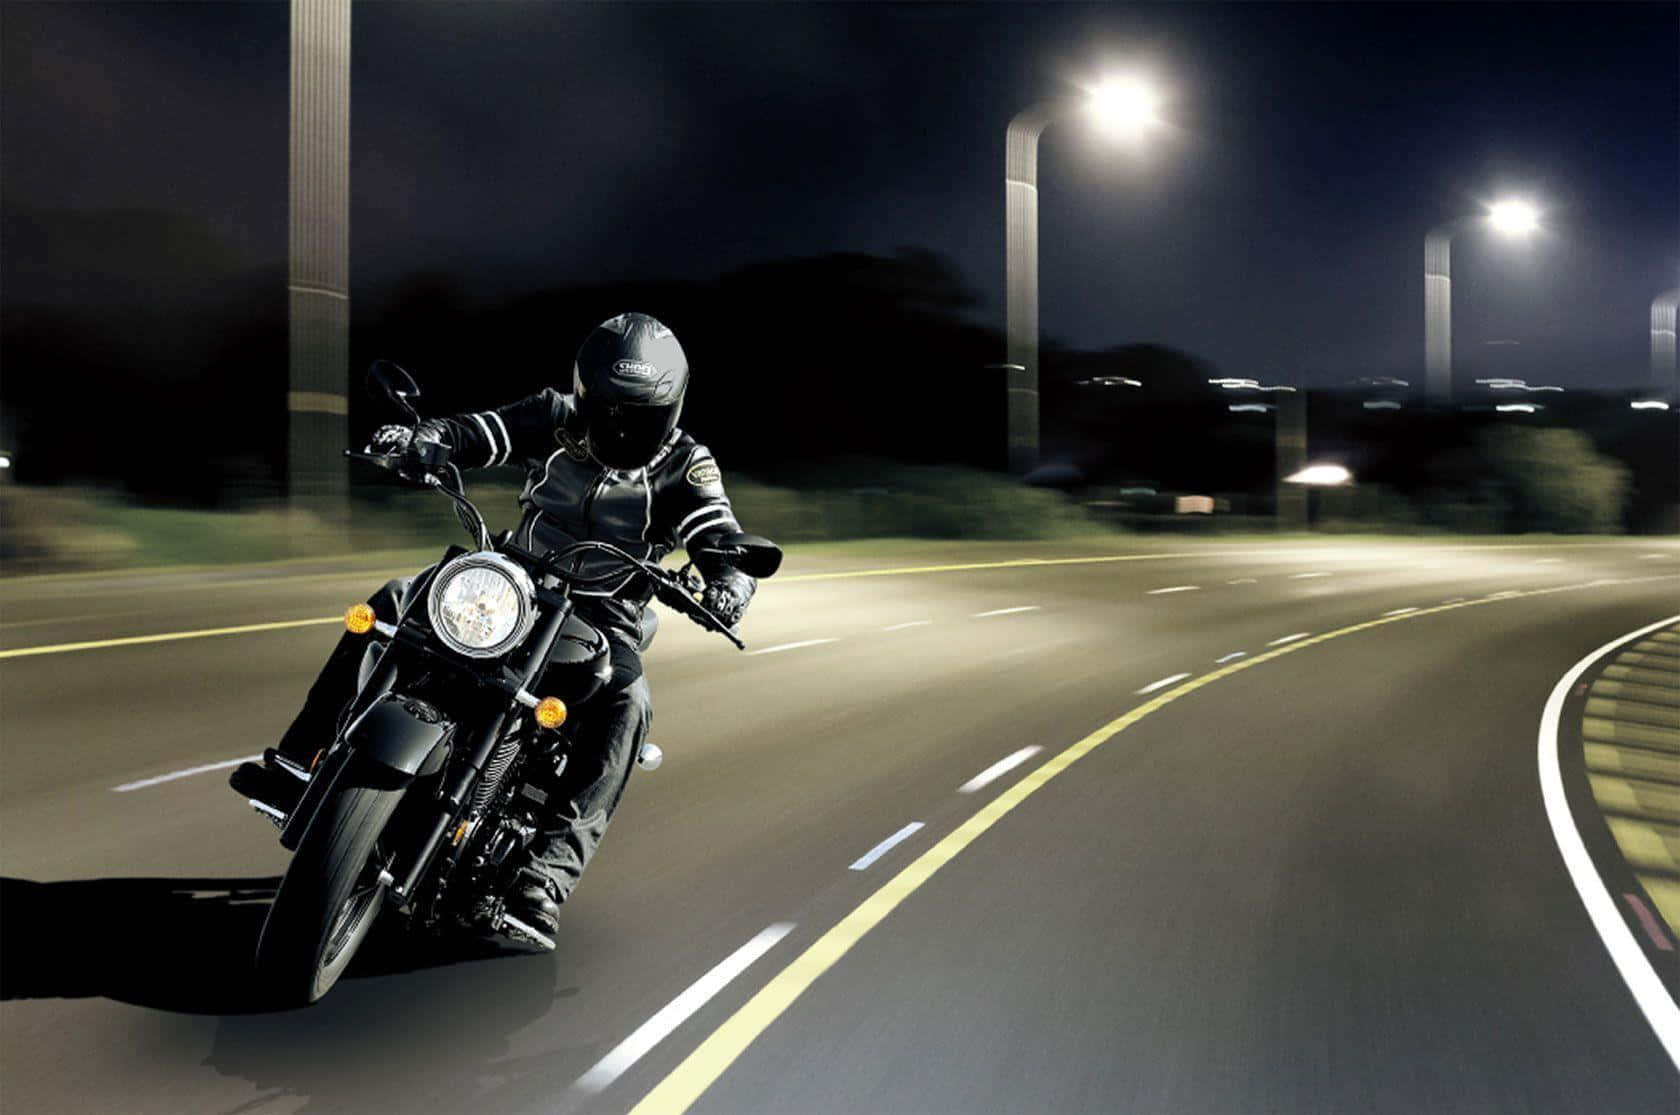 Imágenesde Motocicletas Conduciendo De Noche.